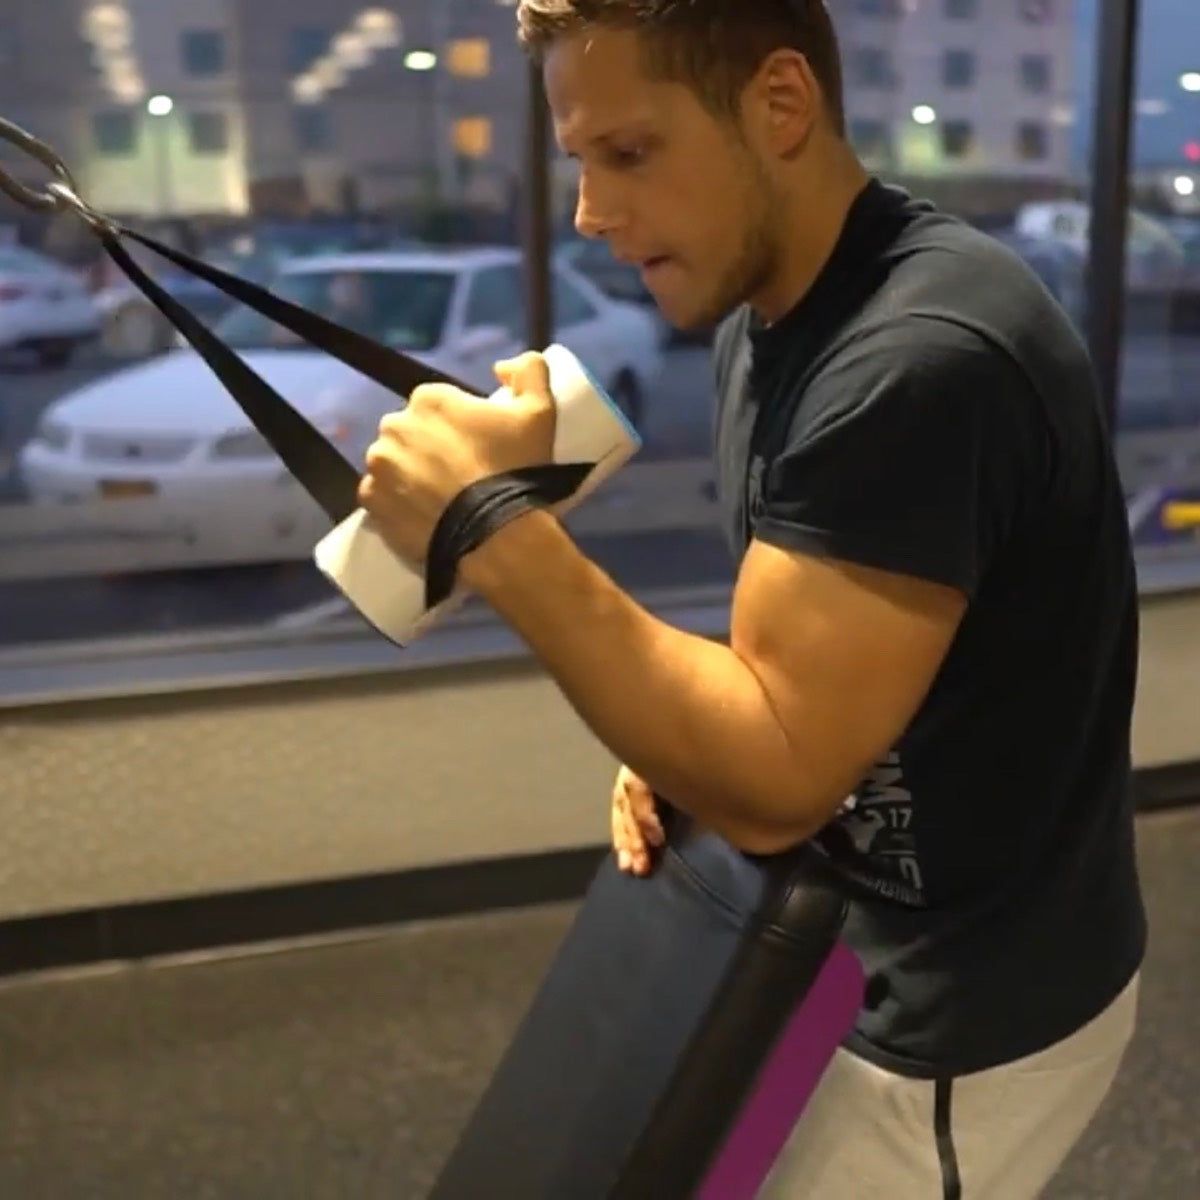 Strengthening Wrist Breaking Exercise Equipment Belt Strap